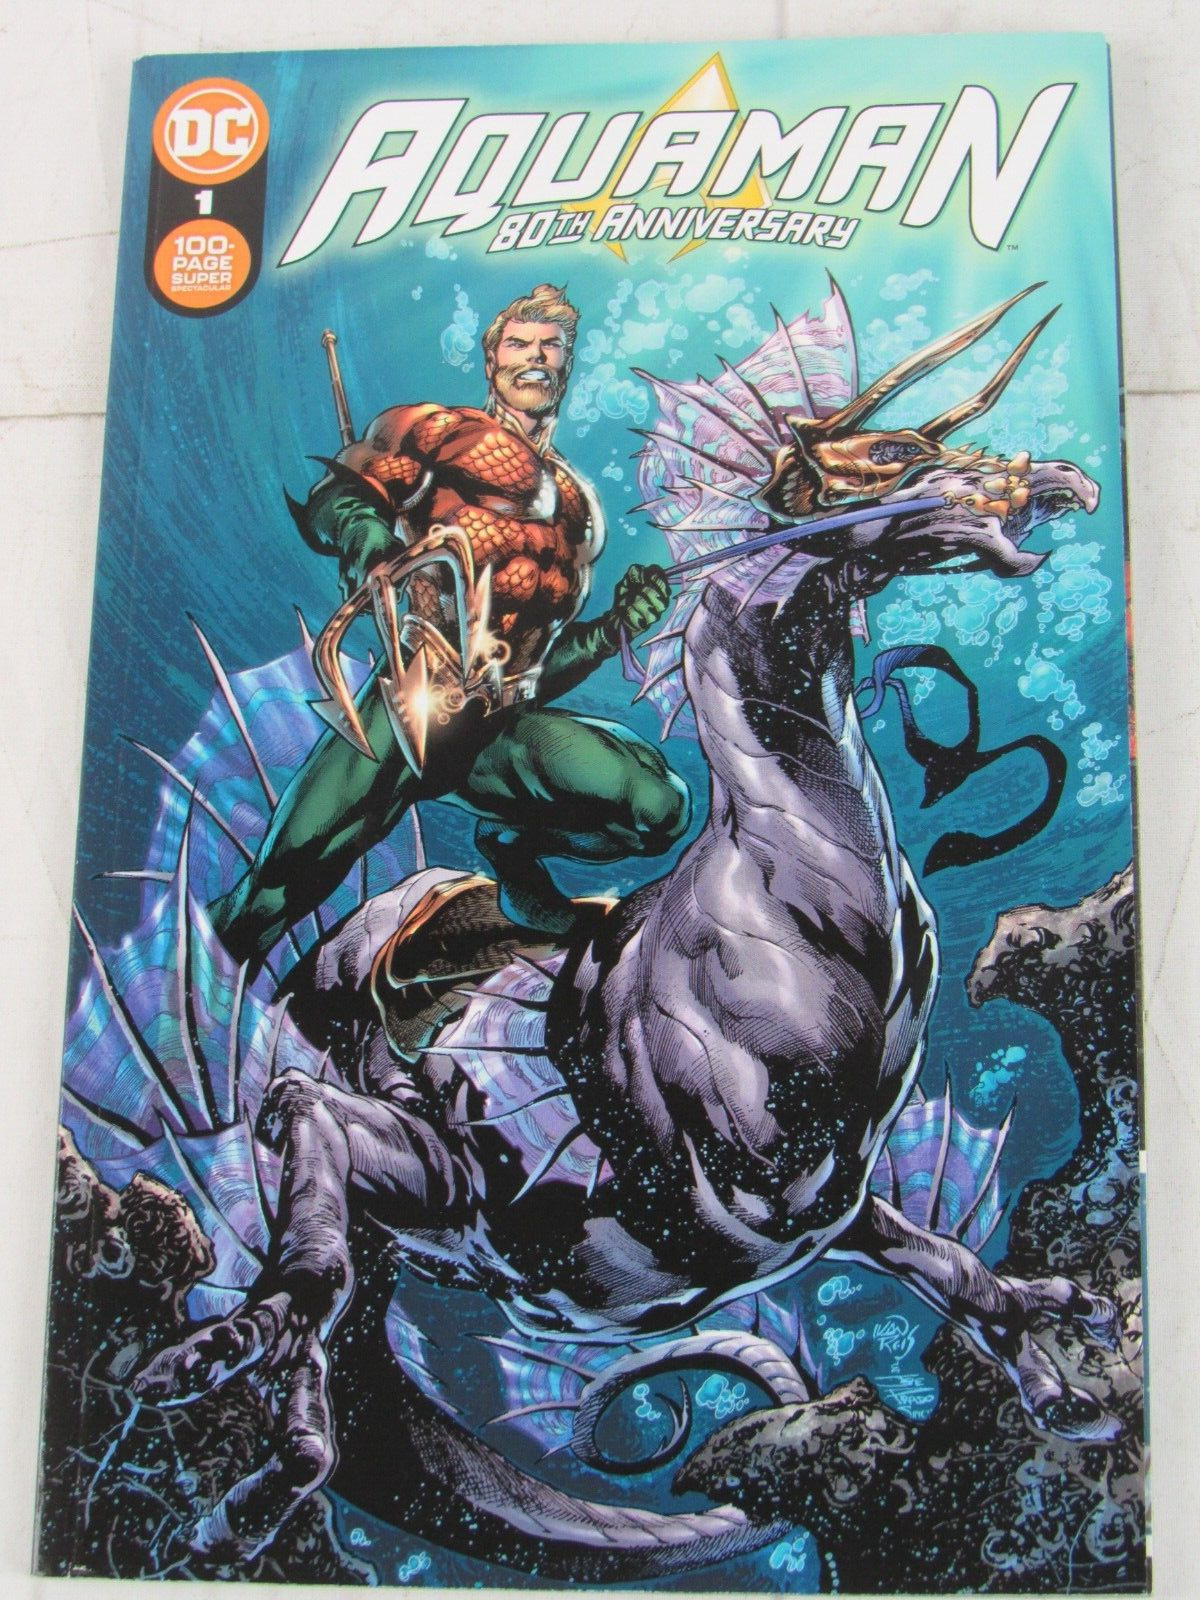 Aquaman 80th Anniversary: 100-Page Super Spectacular #1 Oct. 2021 DC Comics TPB